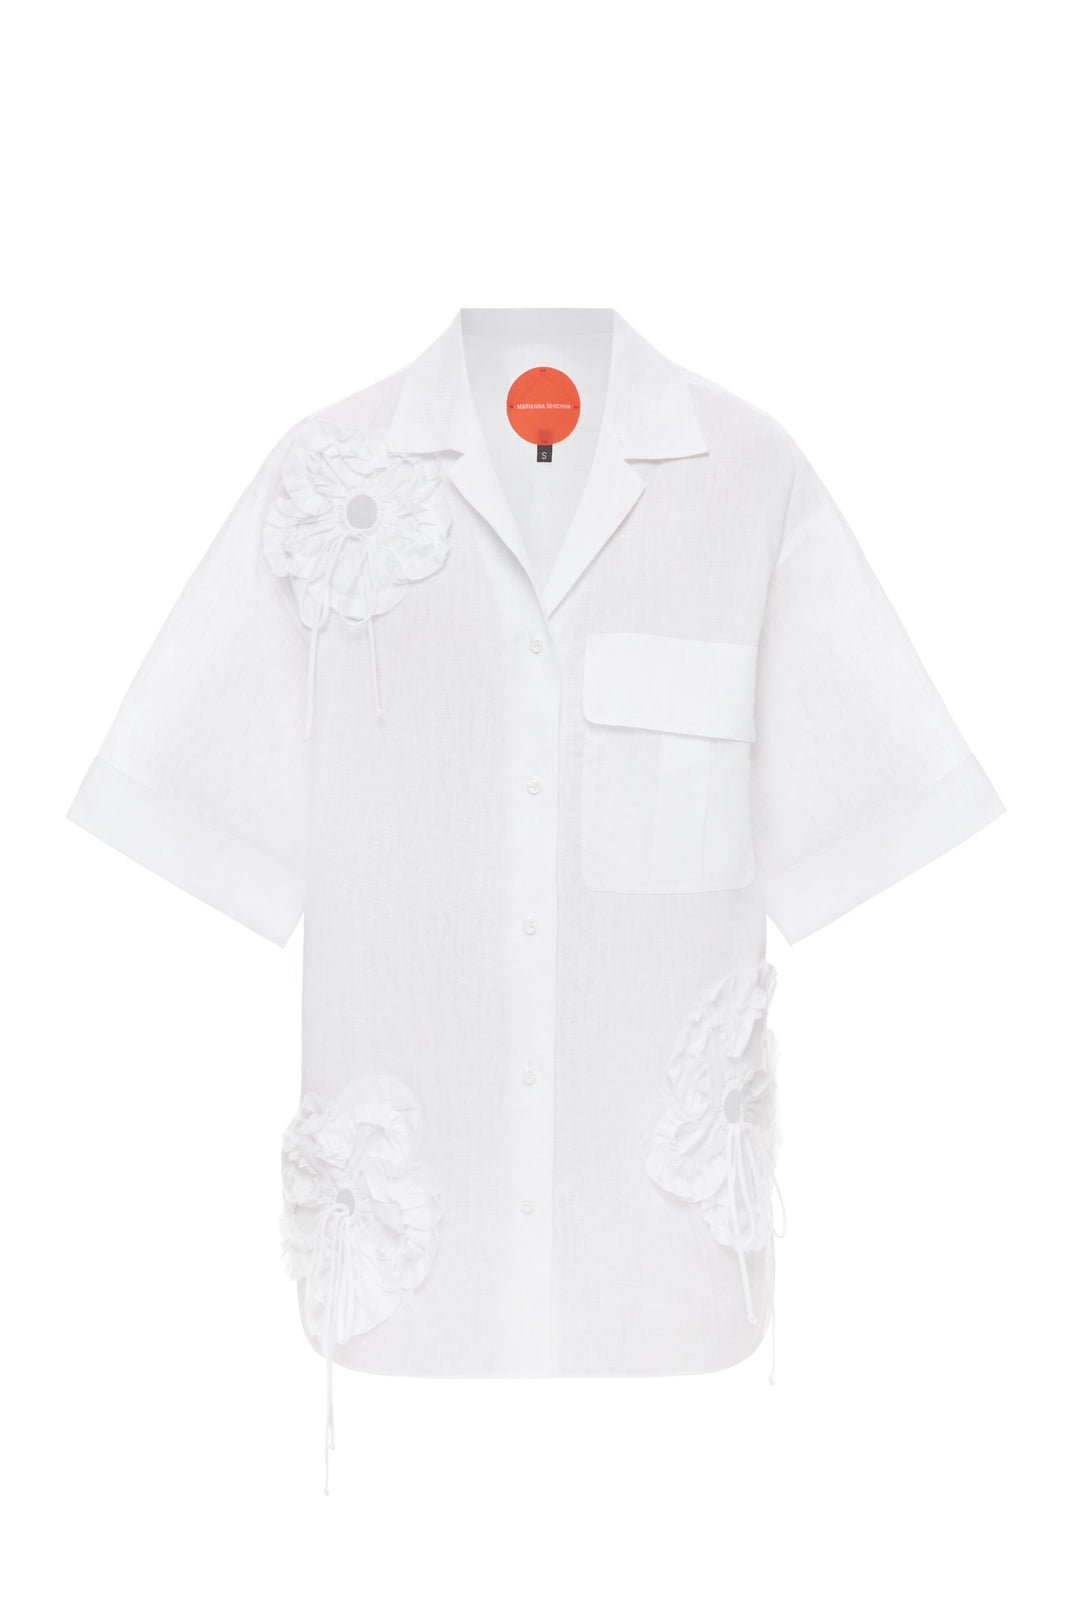 White Flower Power shirt